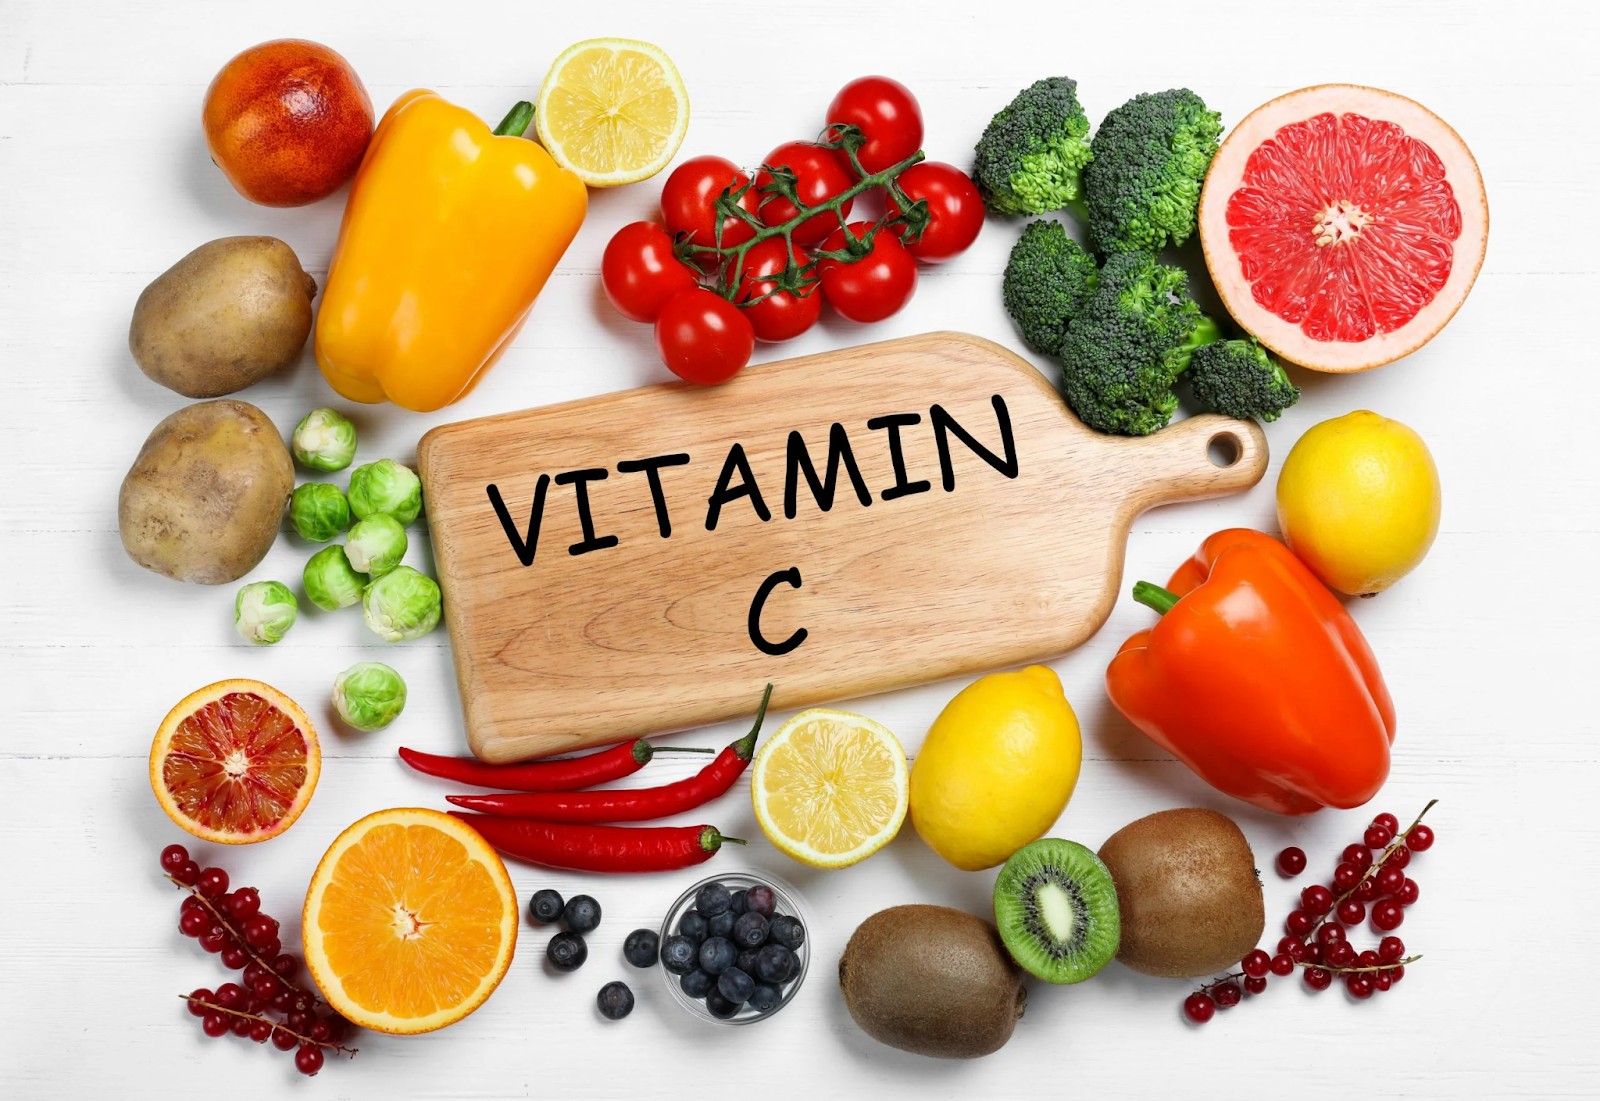 Ăn các loại rau quả chứa nhiều vitamin C giúp hạn chế hiện tượng da mẩn đỏ ngứa